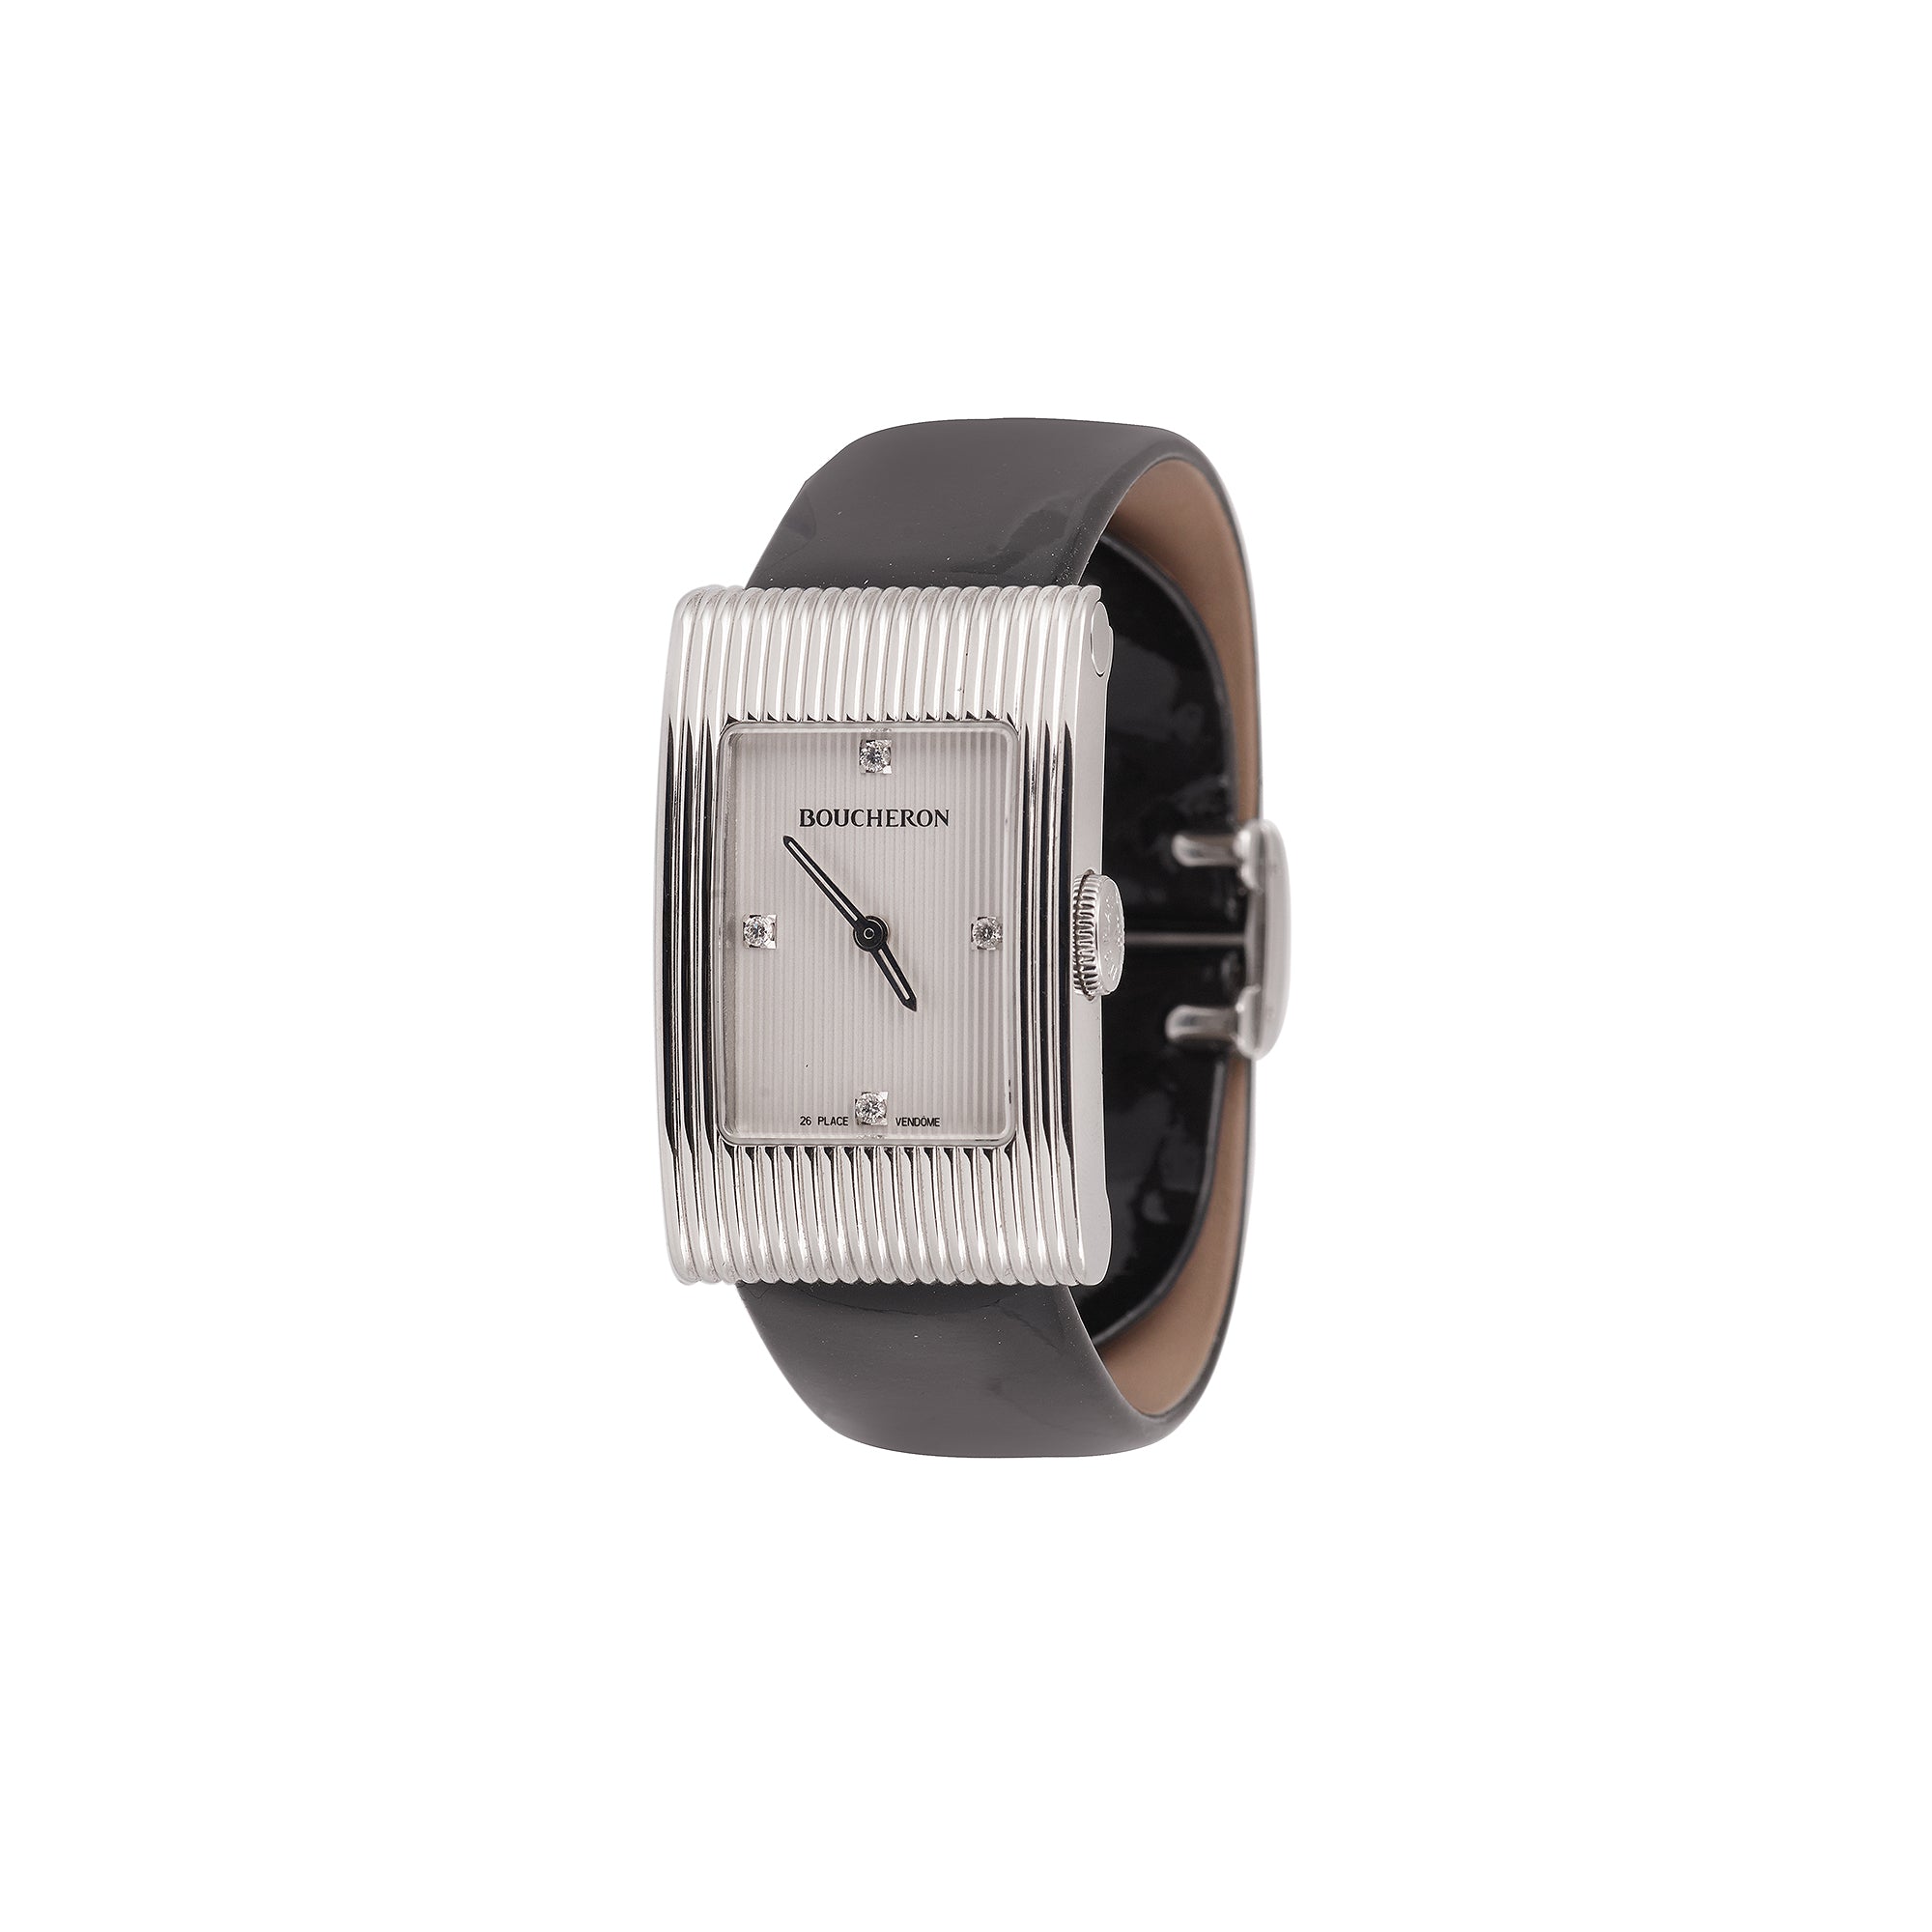 Boucheron “Reflet” Medium Diamonds Index Steel Watch